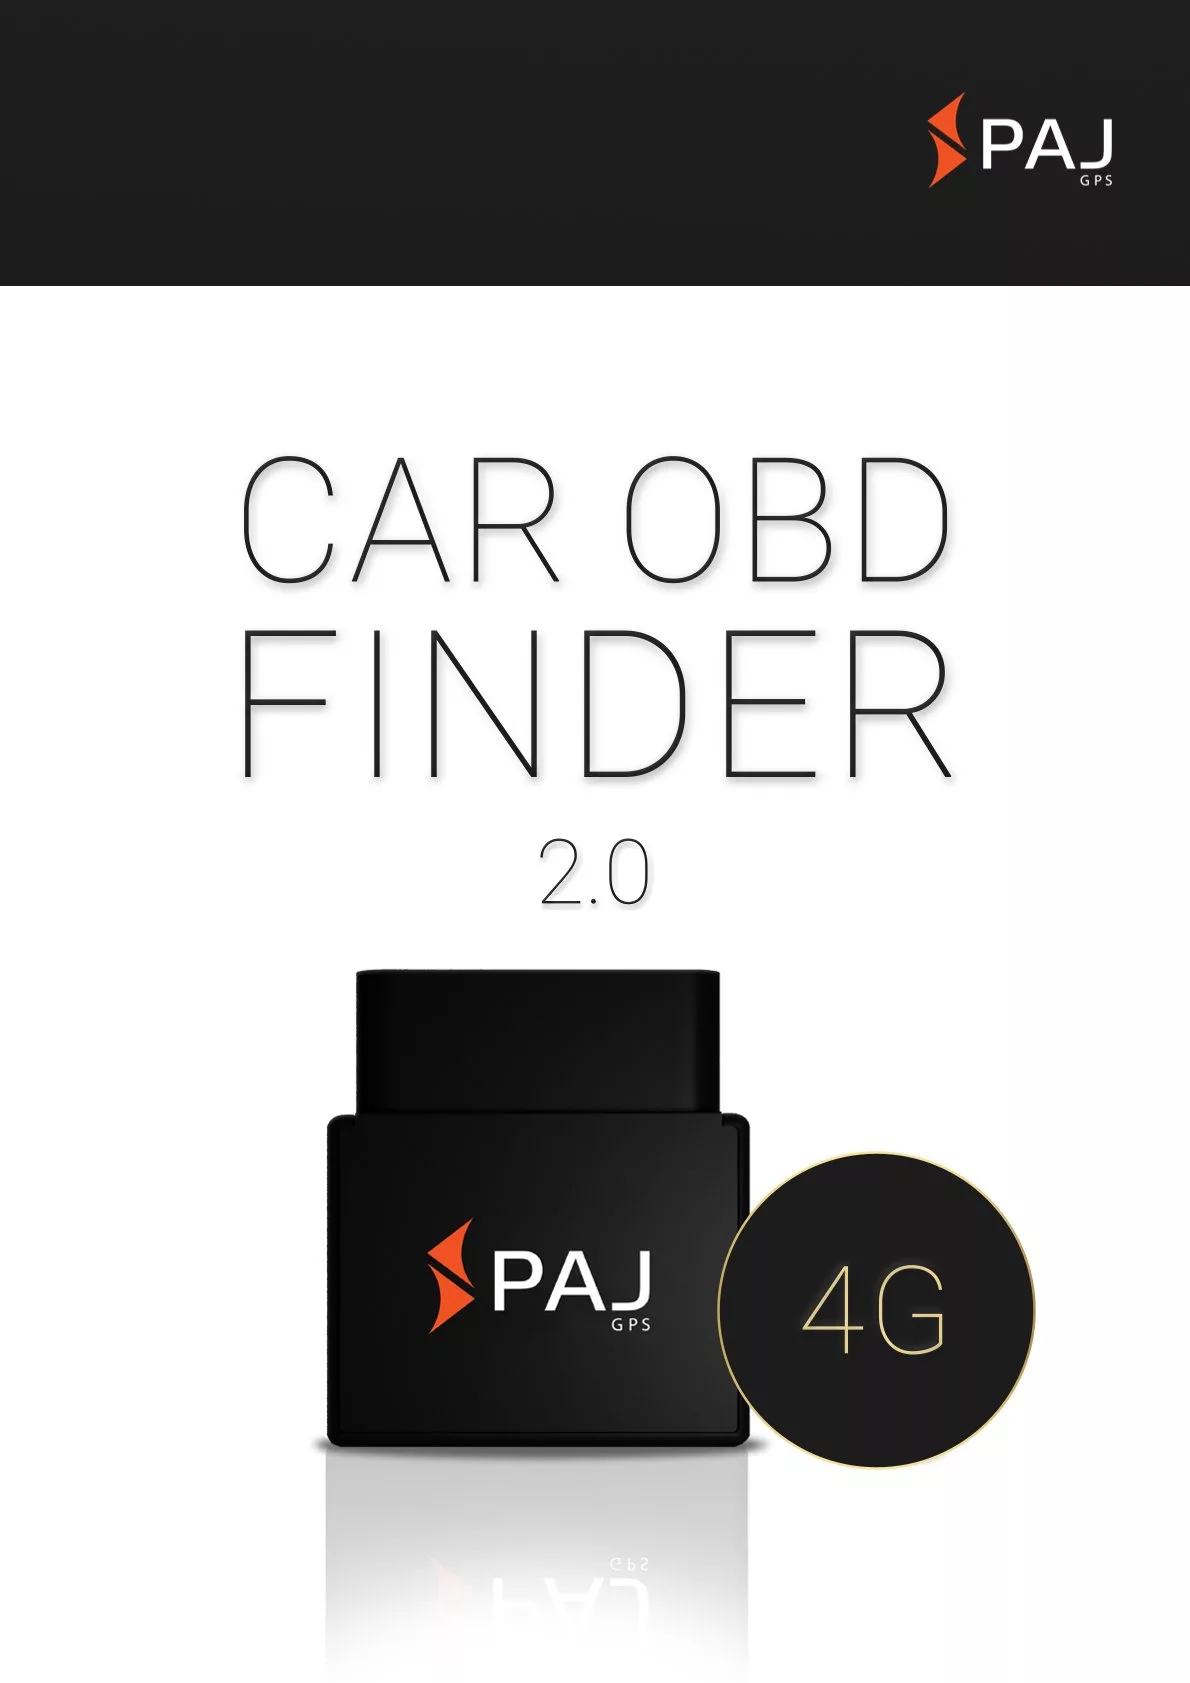 Immagine di copertina per scheda tecnica CAR OBD Finder 4G 2.0